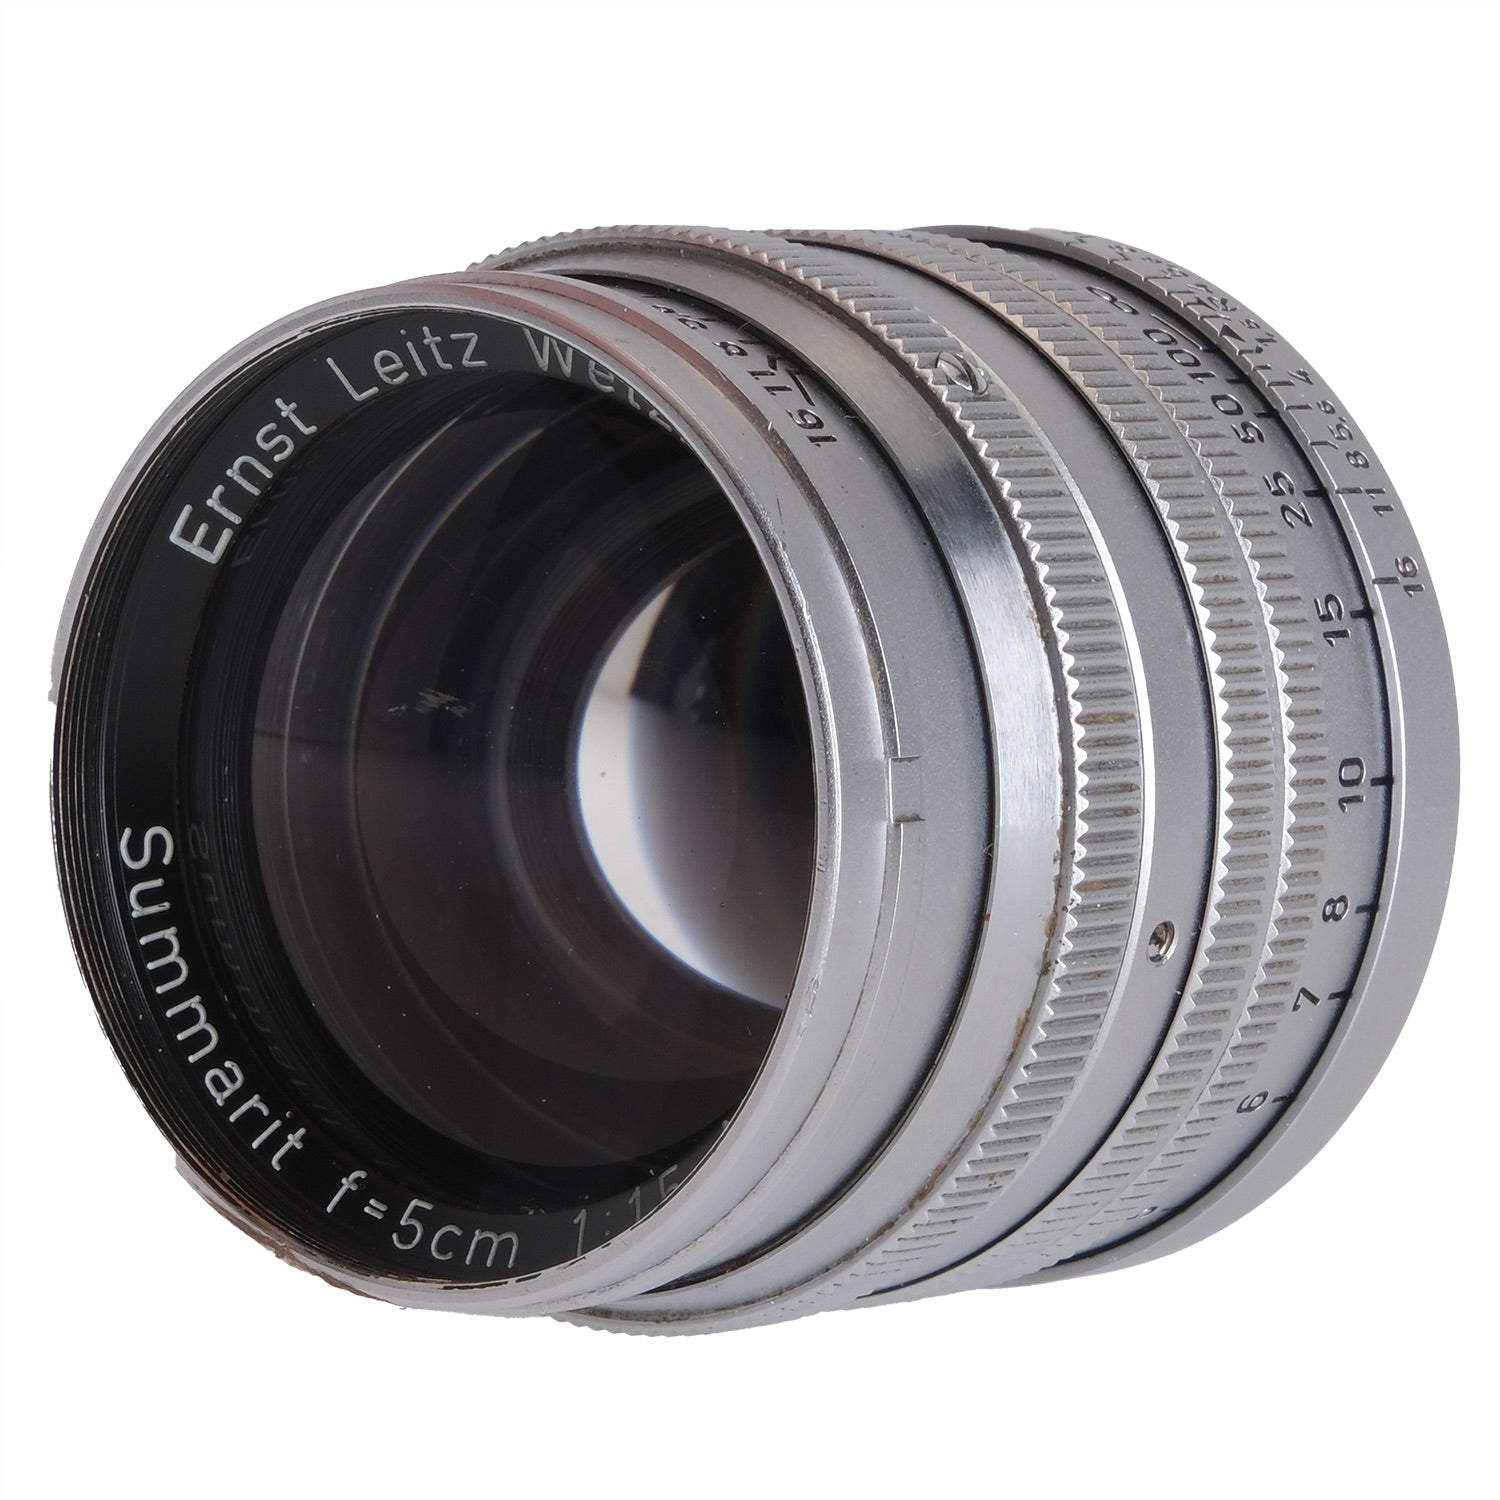 Leica 5cm f1.5 Summarit 952219